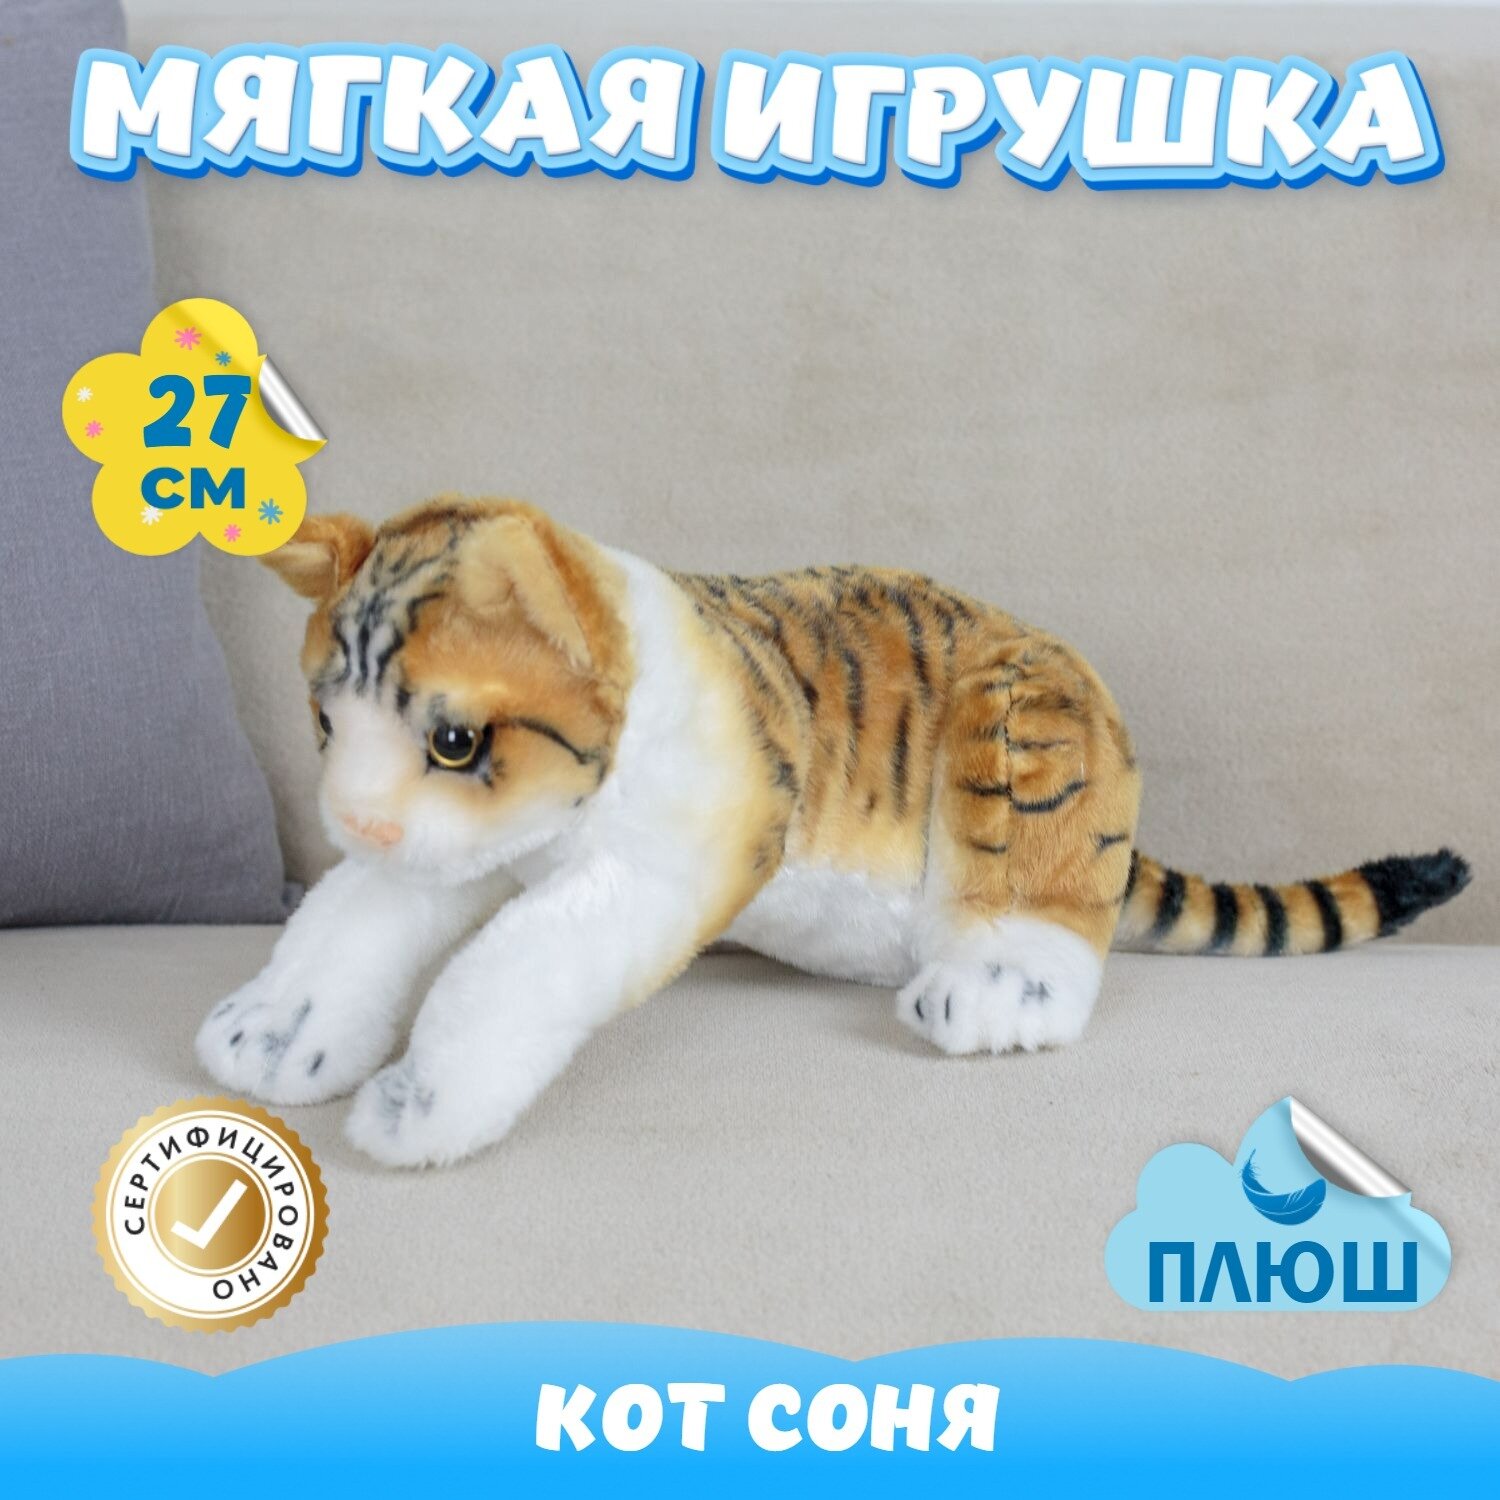 Мягкая игрушка Кот Соня для малышей / Плюшевый Котик для сна KiDWoW желтый 27см